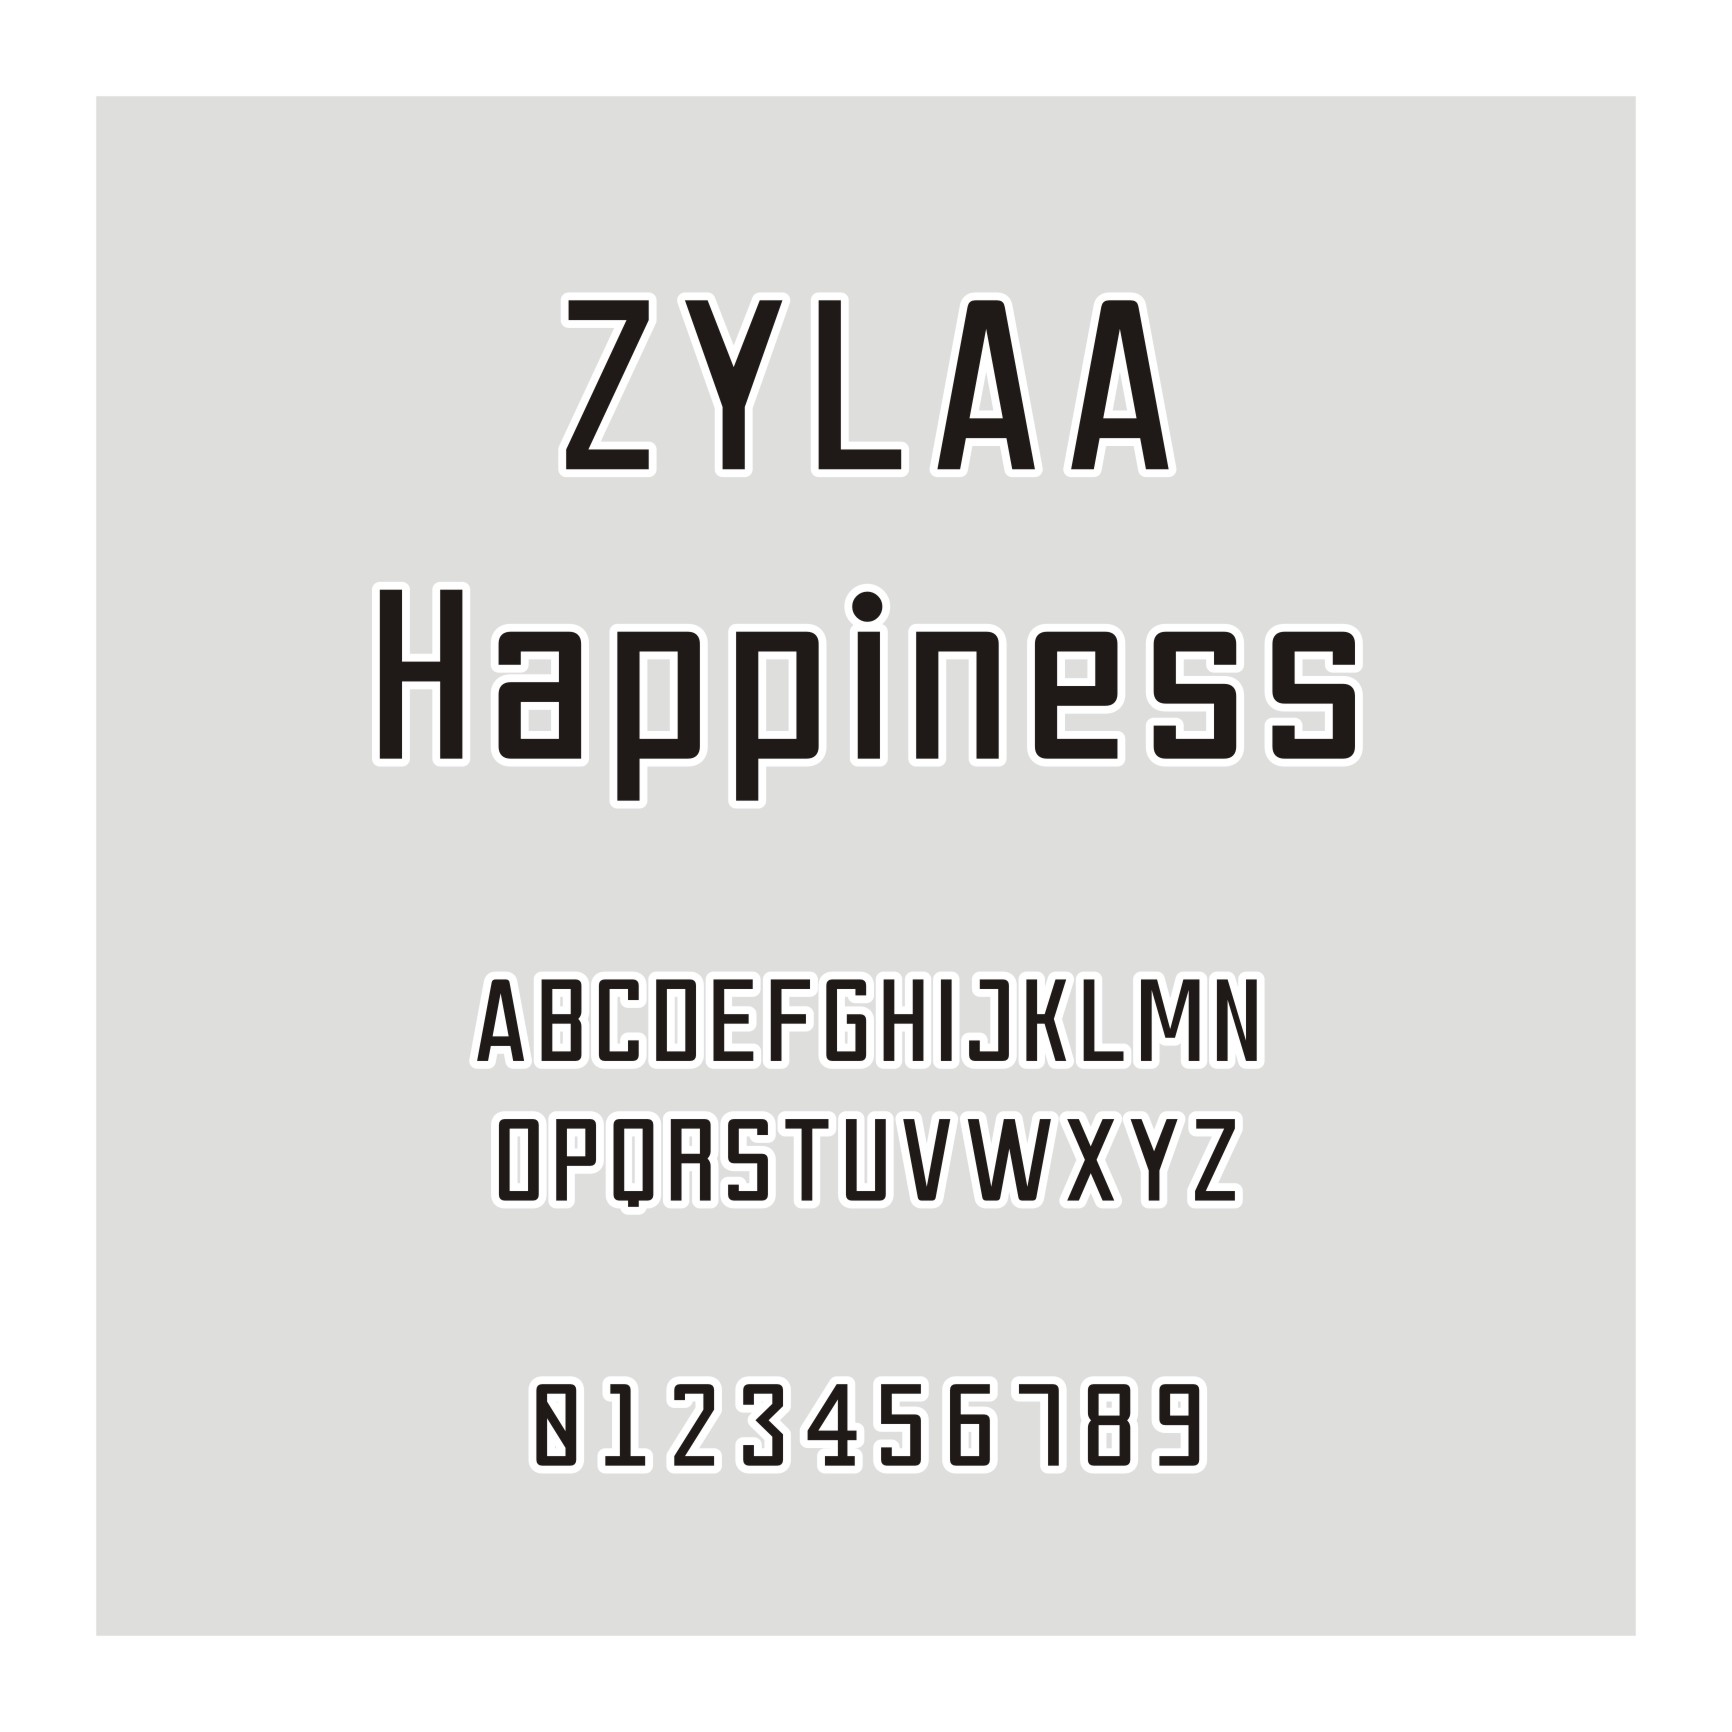 ZYLAA Happiness